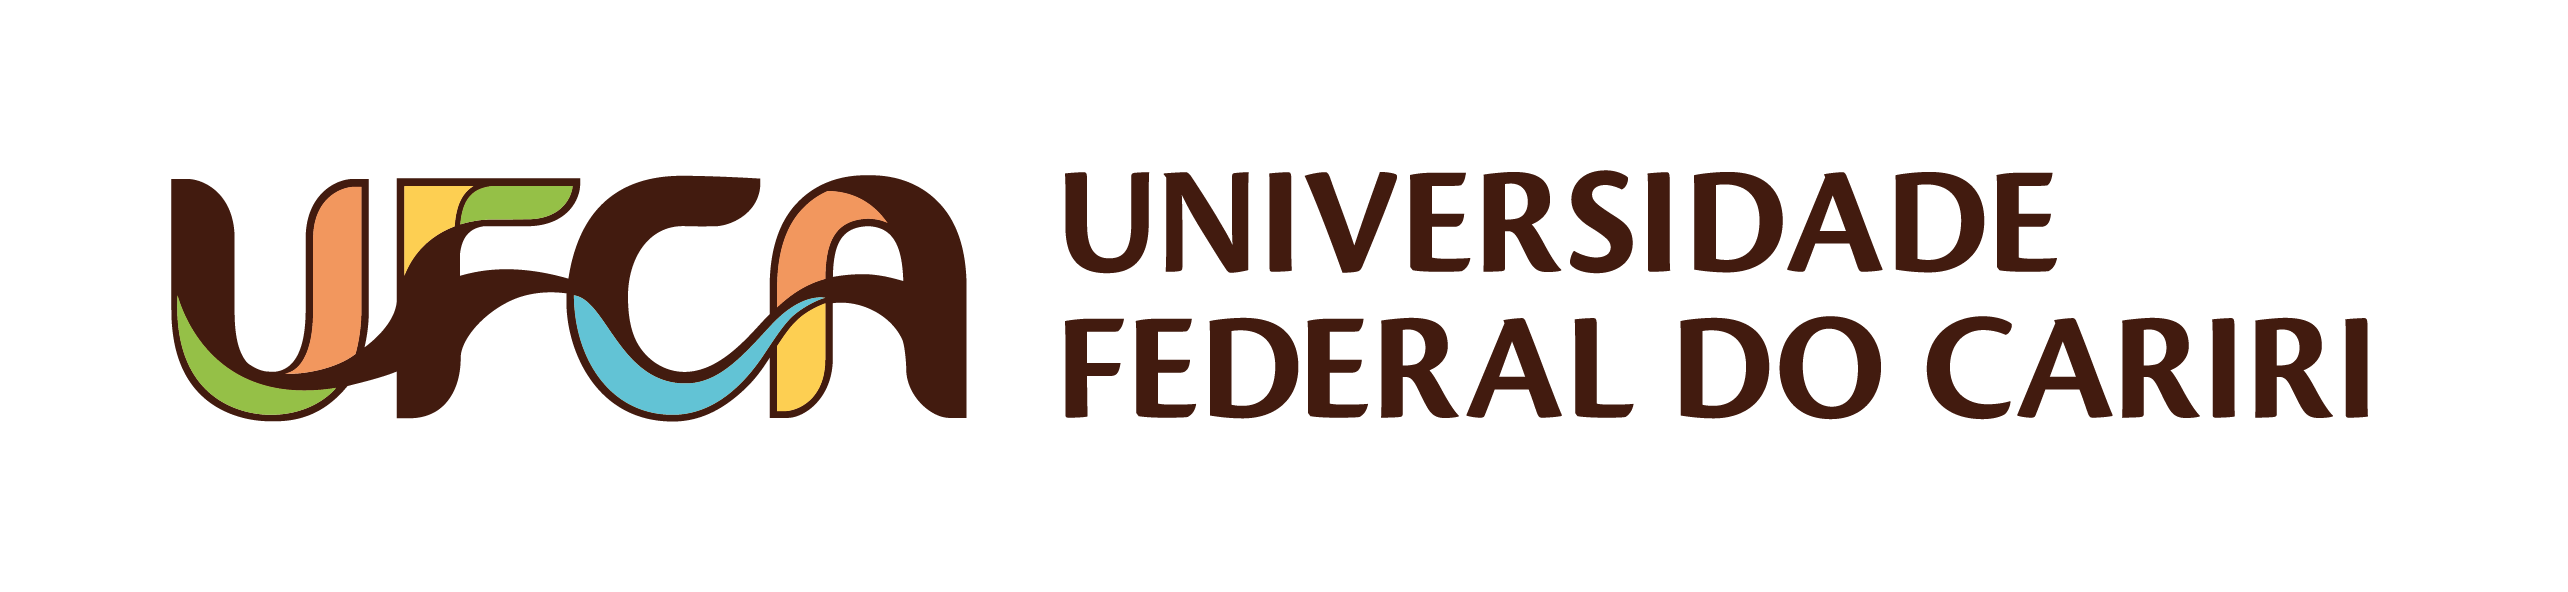 Universidade Federal do Cariri